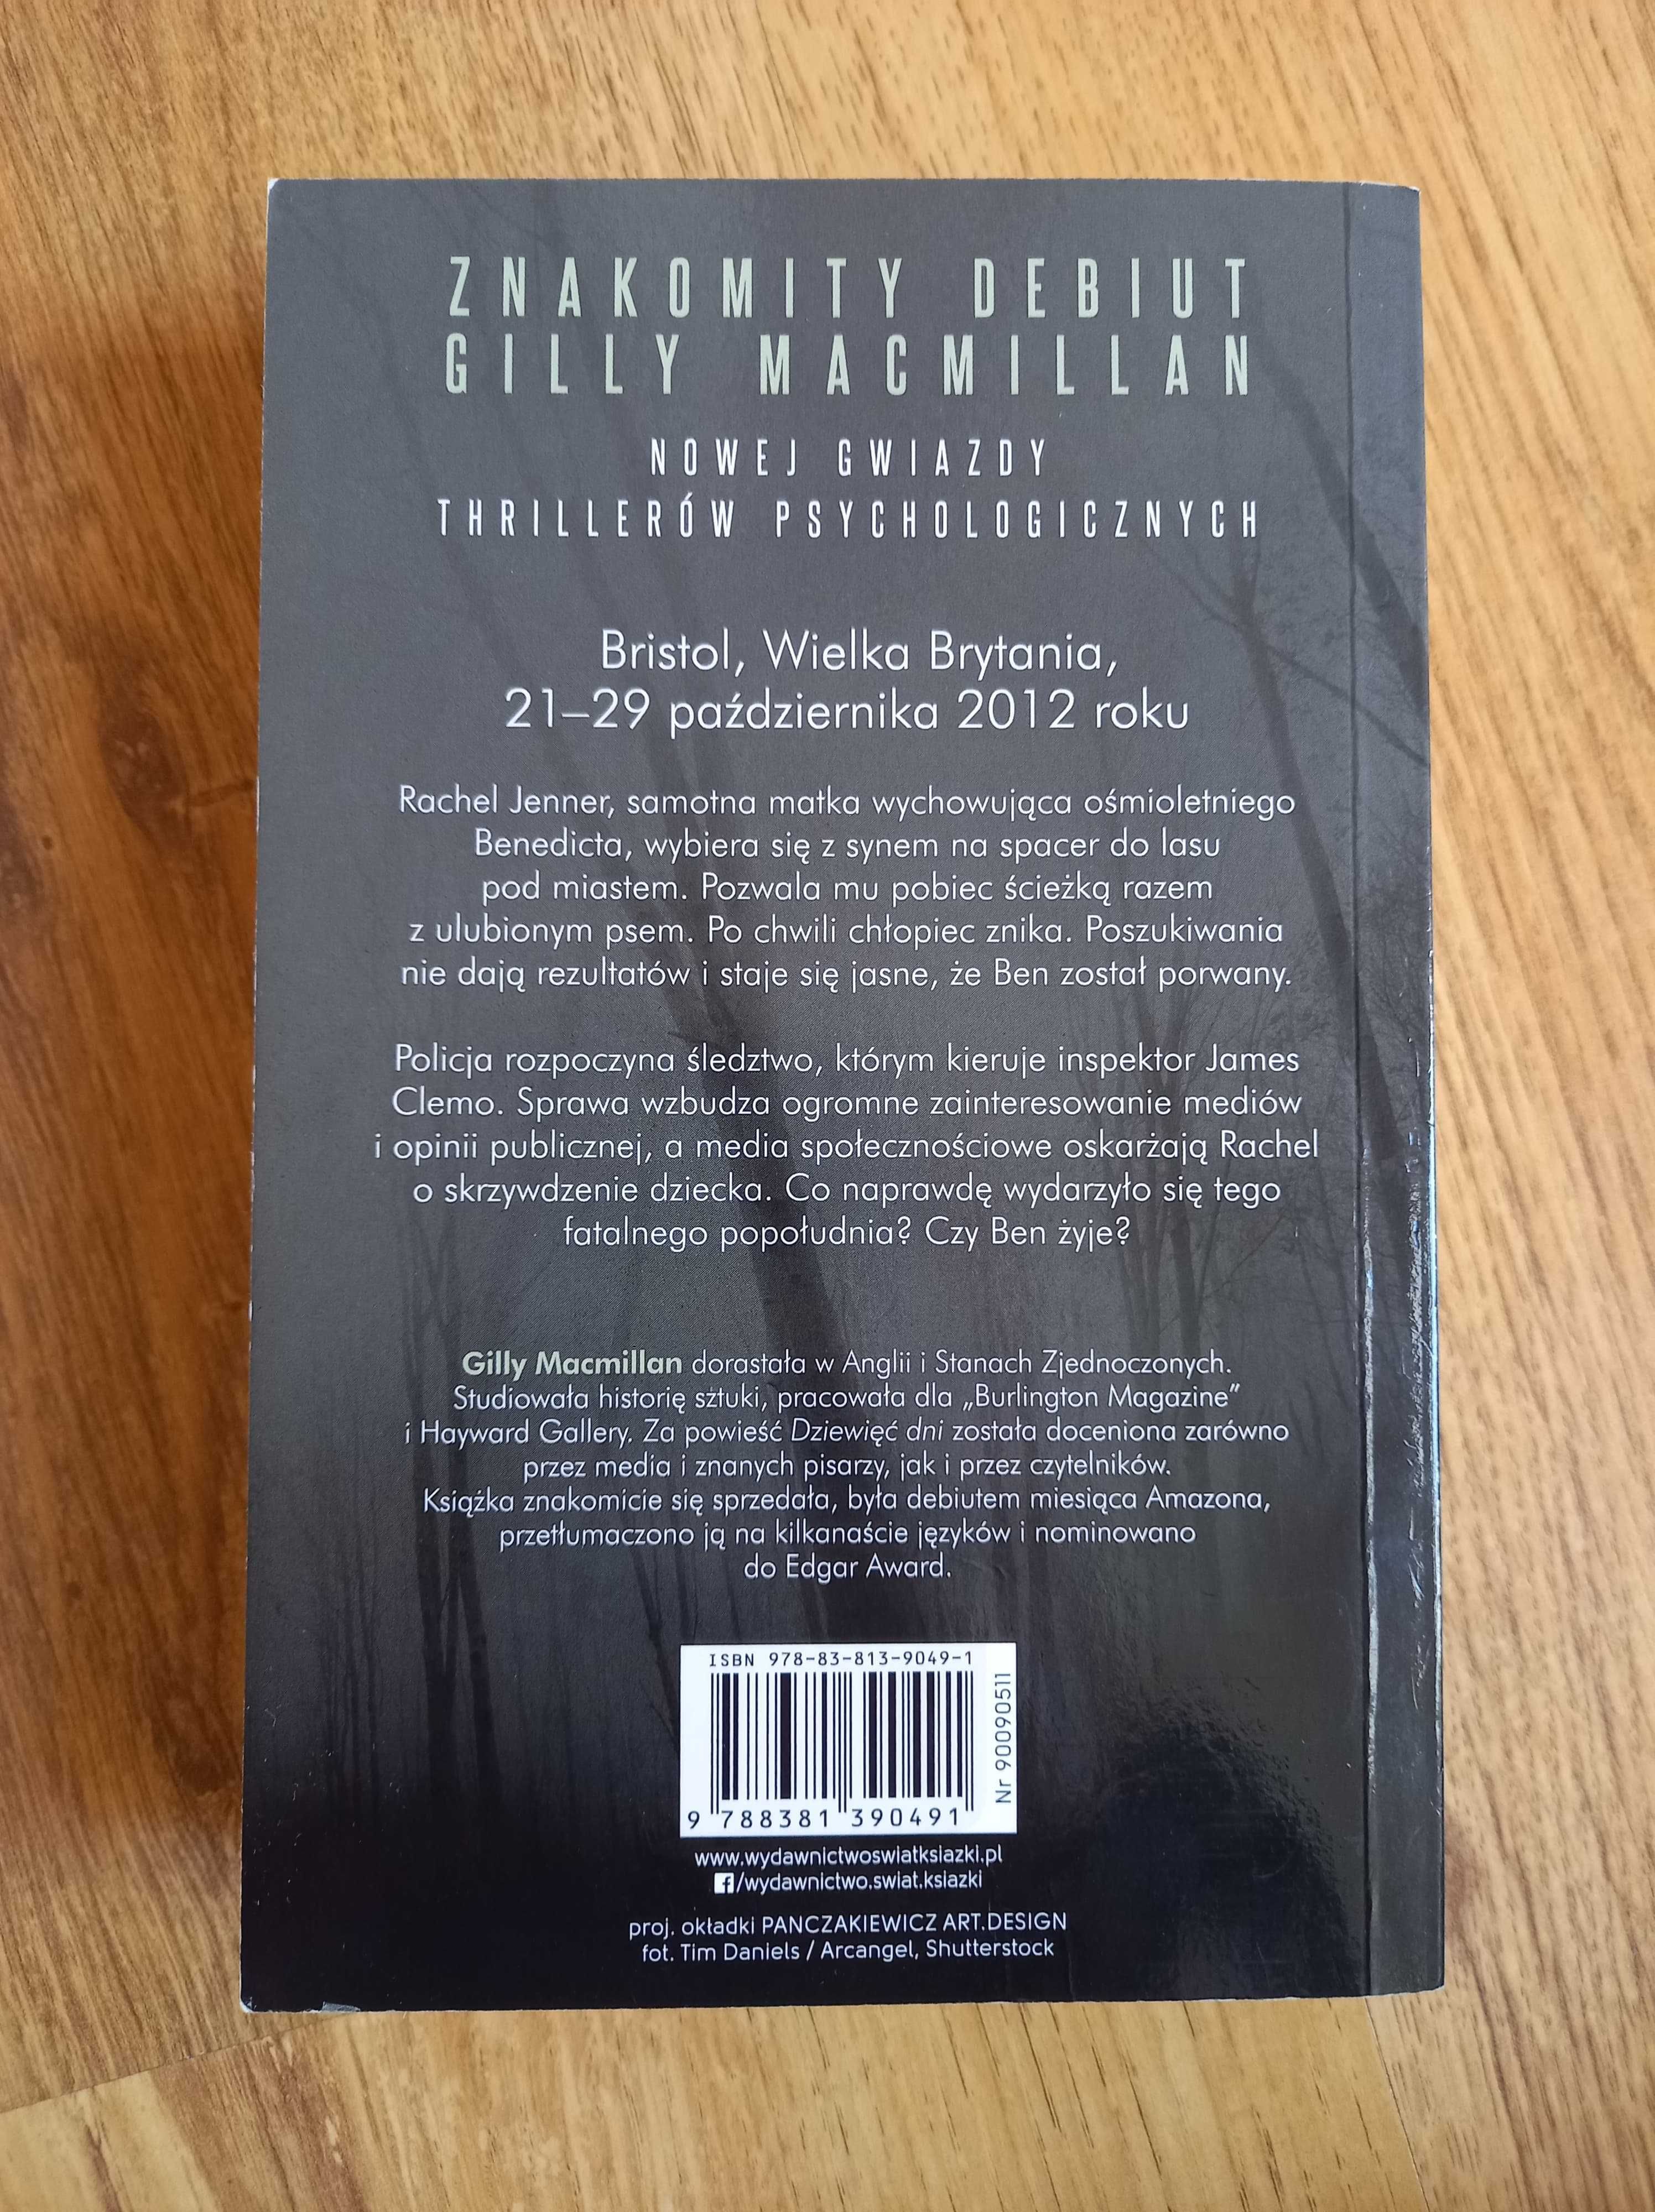 Książka Gilly Macmillan ,,Dziewięć dni"